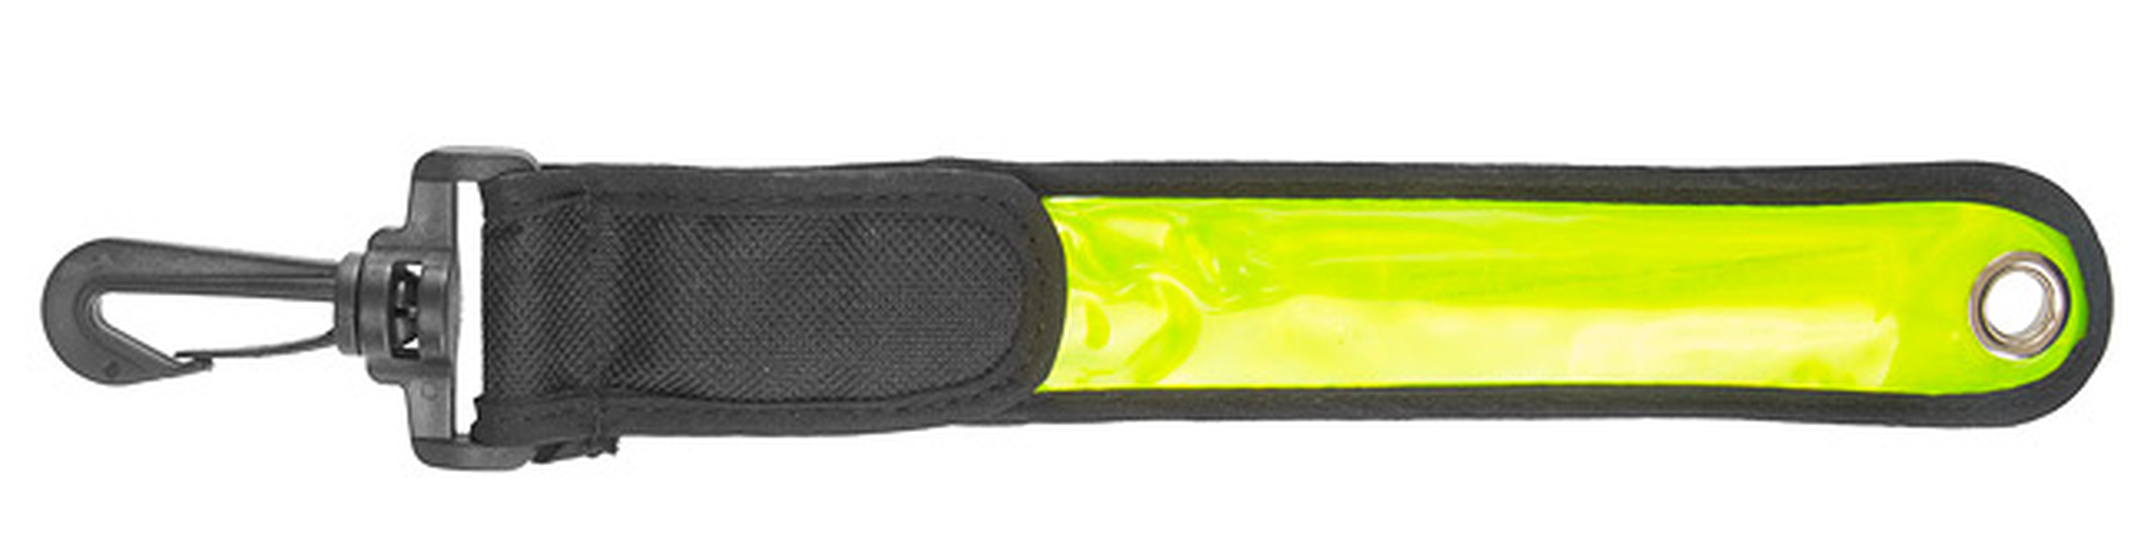 Светоотражающая полоса JY-1004 зеленая со светодиодом, арт. 560153